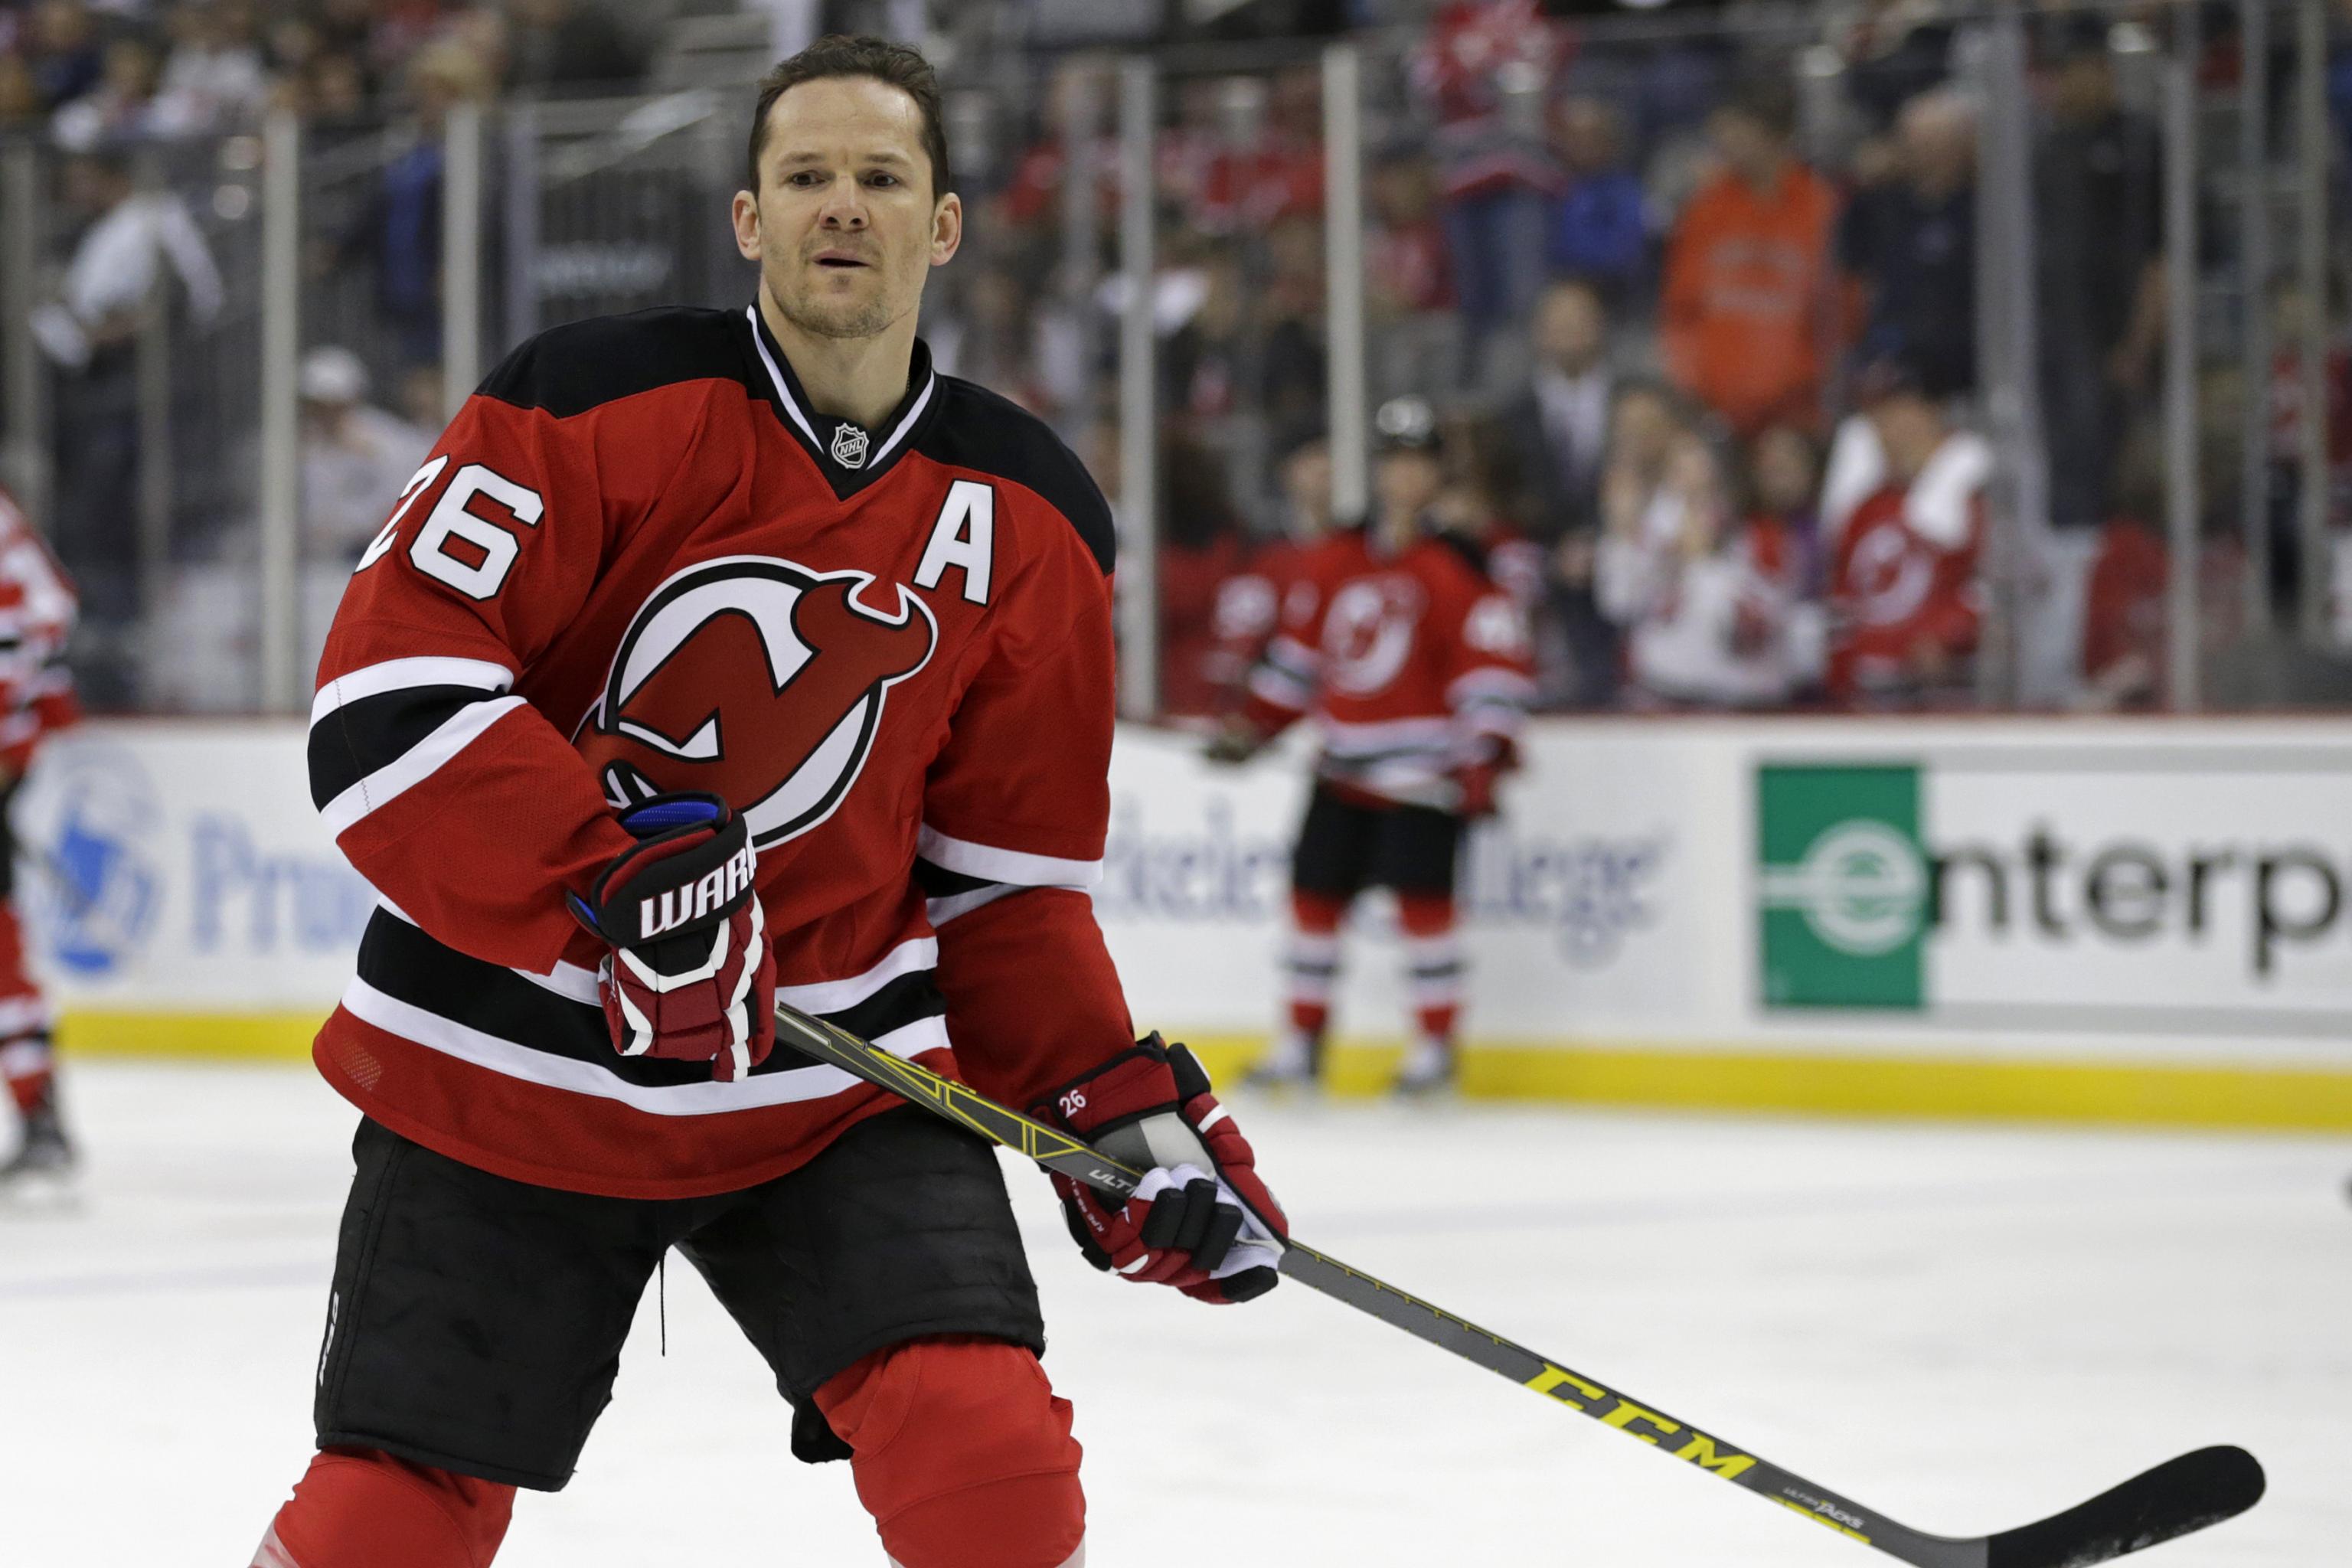 Devils' all-time leading scorer Patrik Elias retires